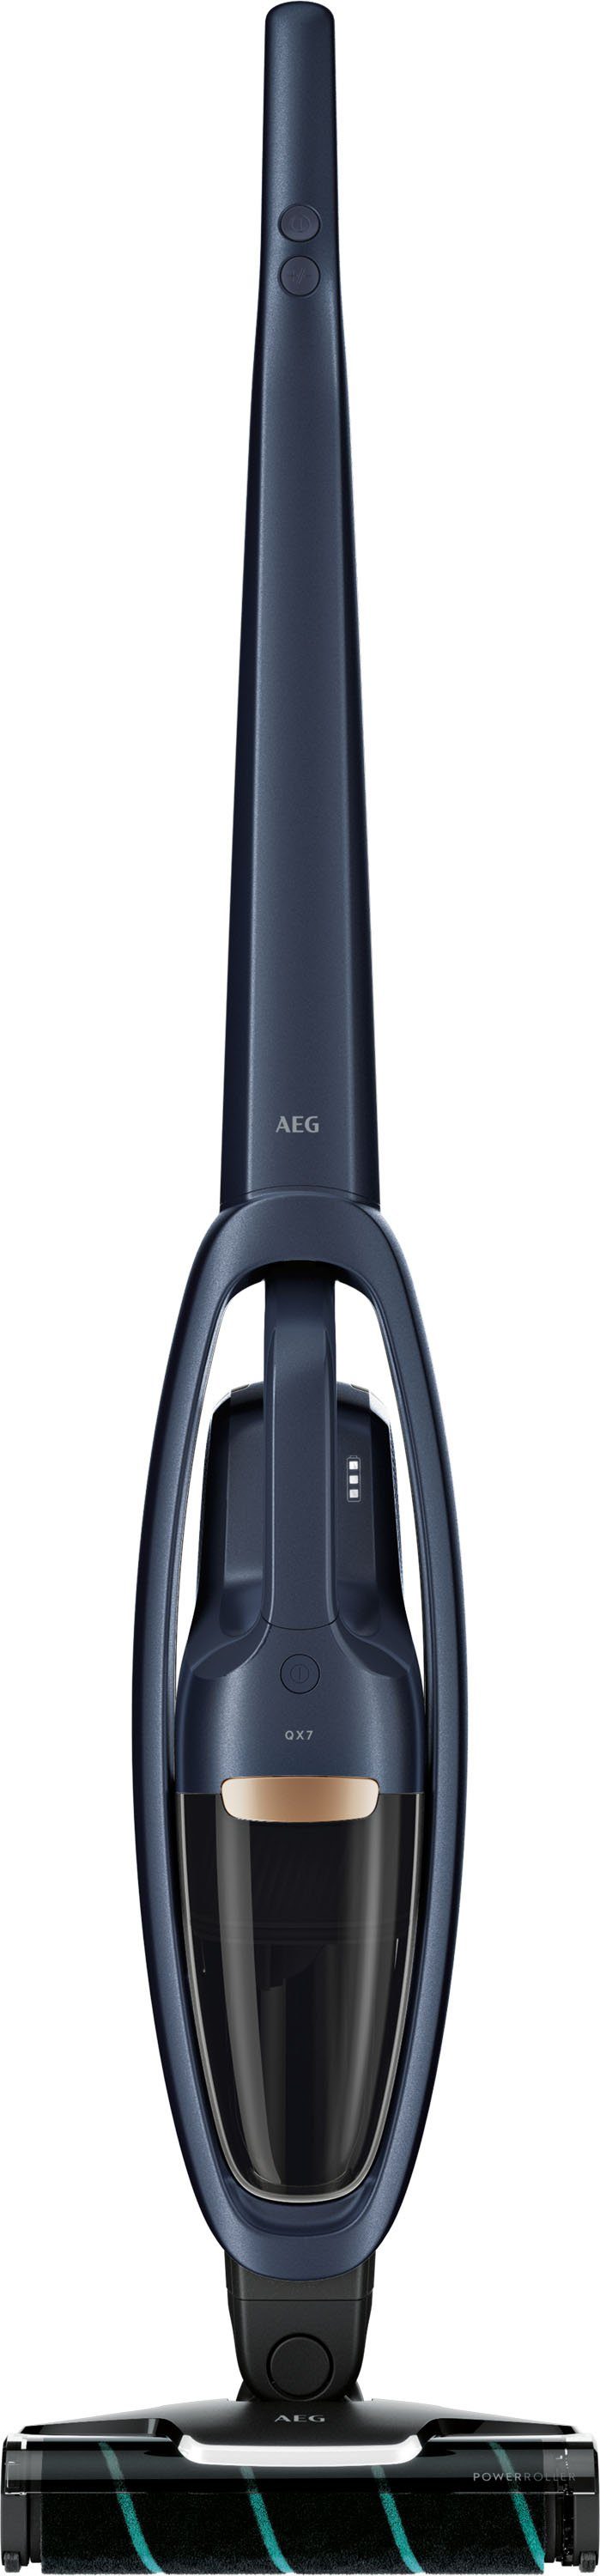 AEG Akku-Stielstaubsauger QX7-1-P5IB, beutellos, Mit Design, Power-Softrolle 2in1